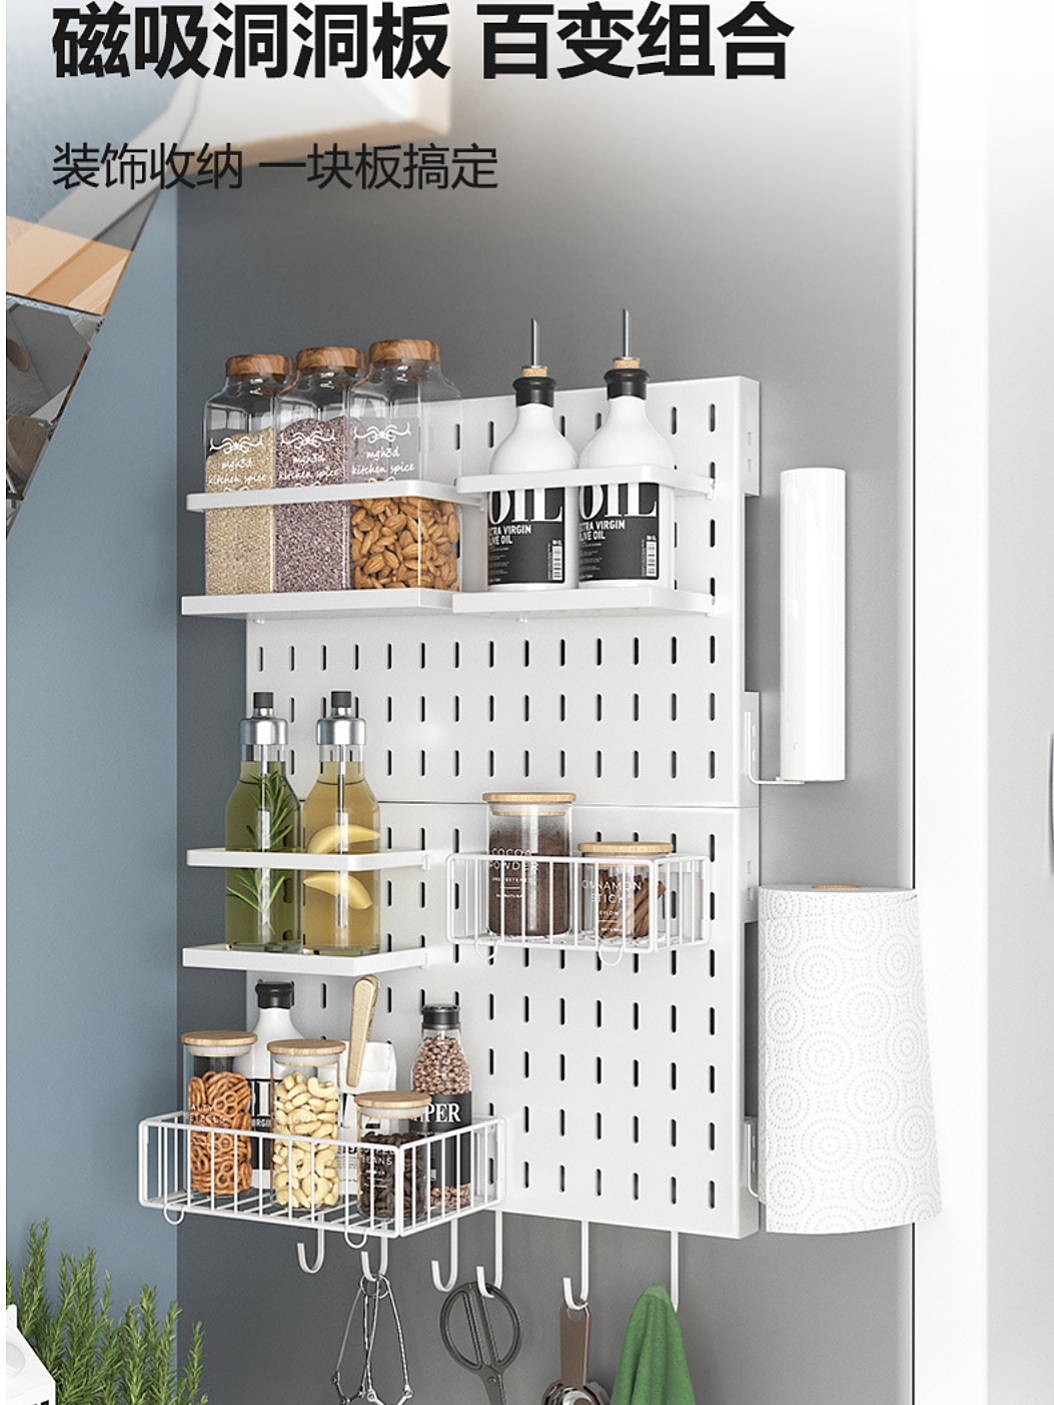 冰箱置物架多層組合收納架 簡約現代風格碳鋼壁掛式夾縫洞洞板架子